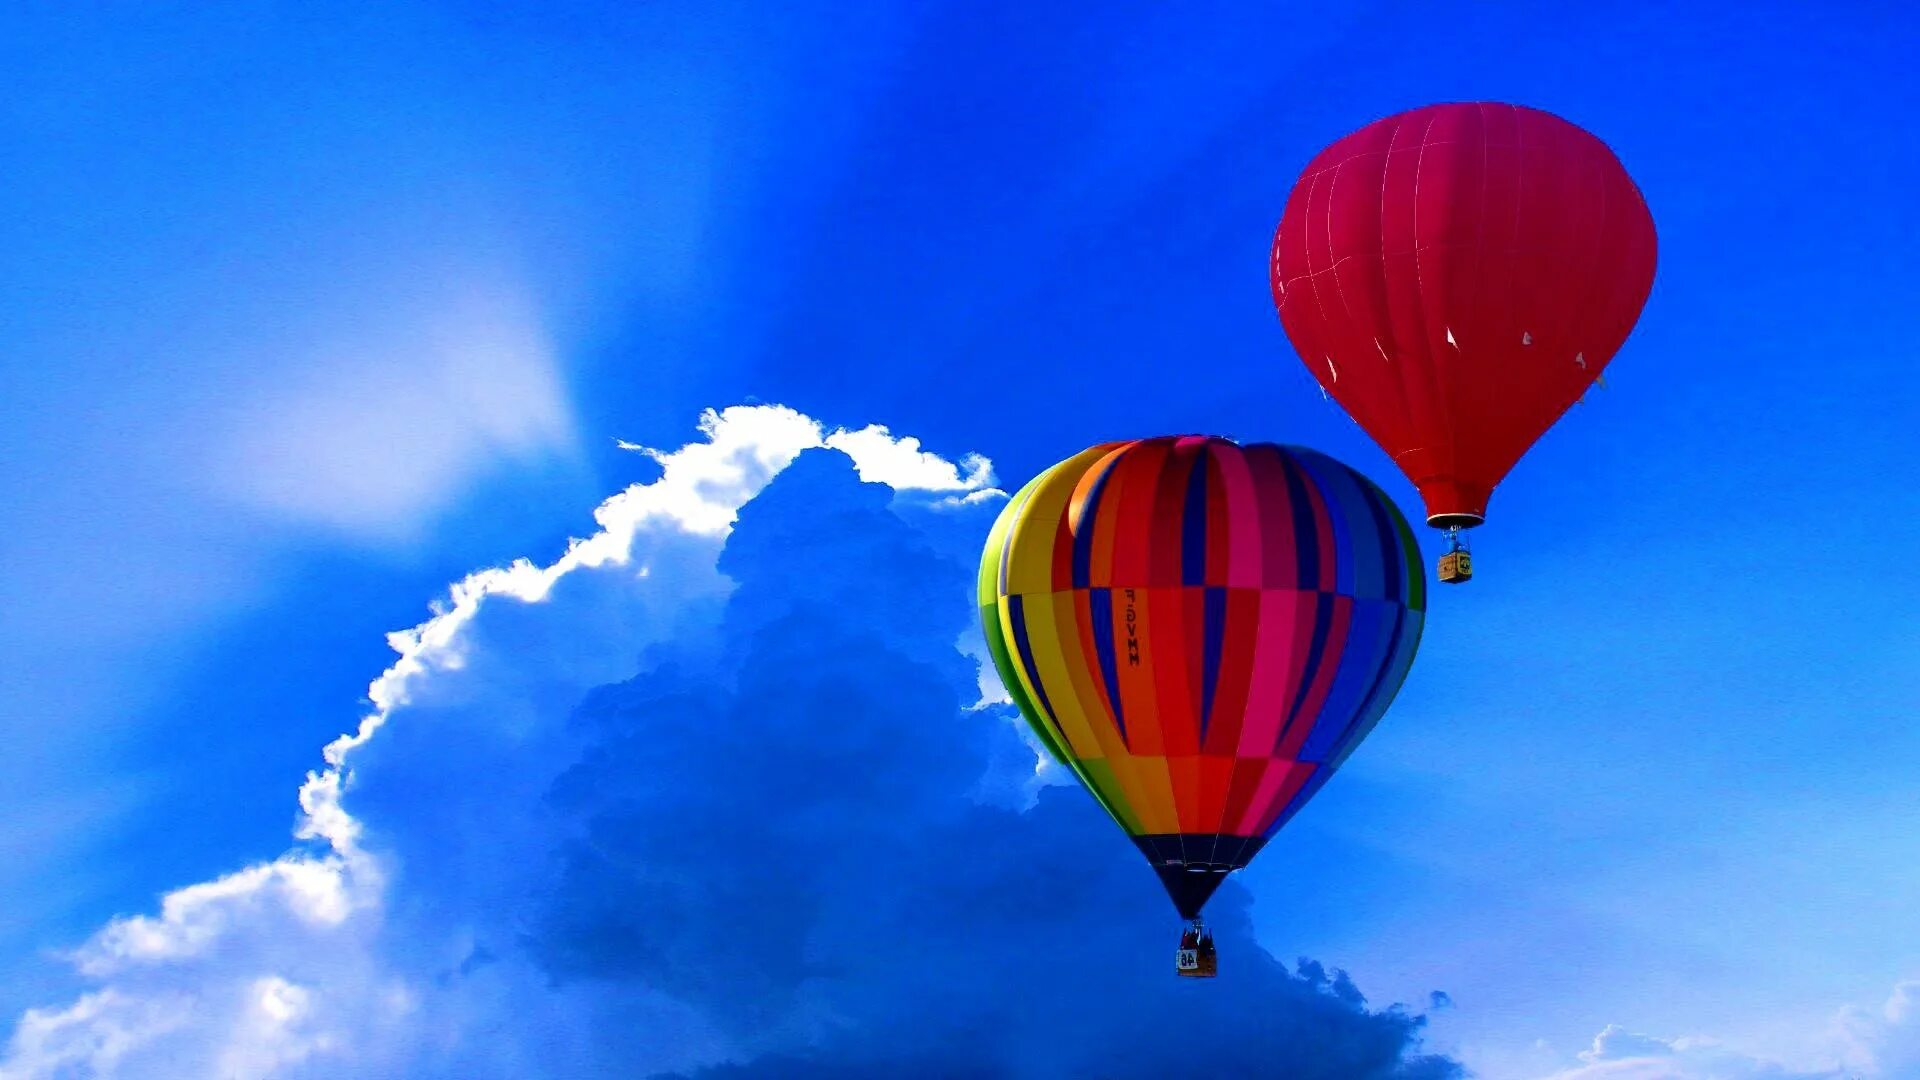 Песни про воздушном шаре. Воздушный шар. Воздушный шар в небе. Заставка воздушные шары. Воздушный шар в голубом небе.